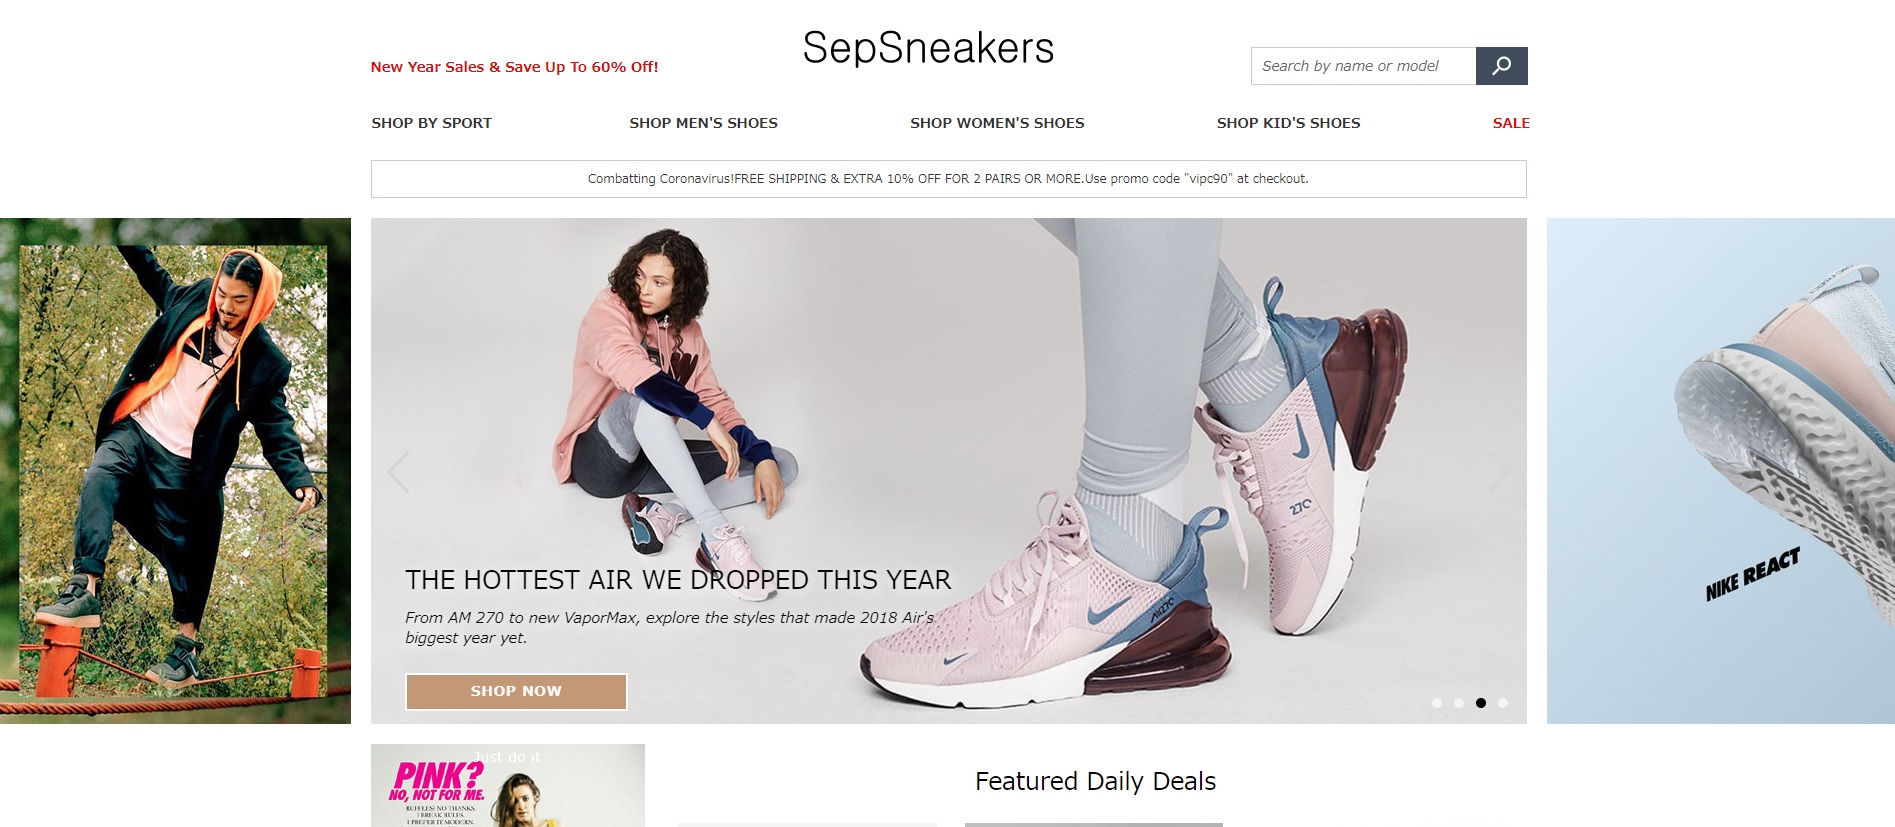 sepsneakers promo code